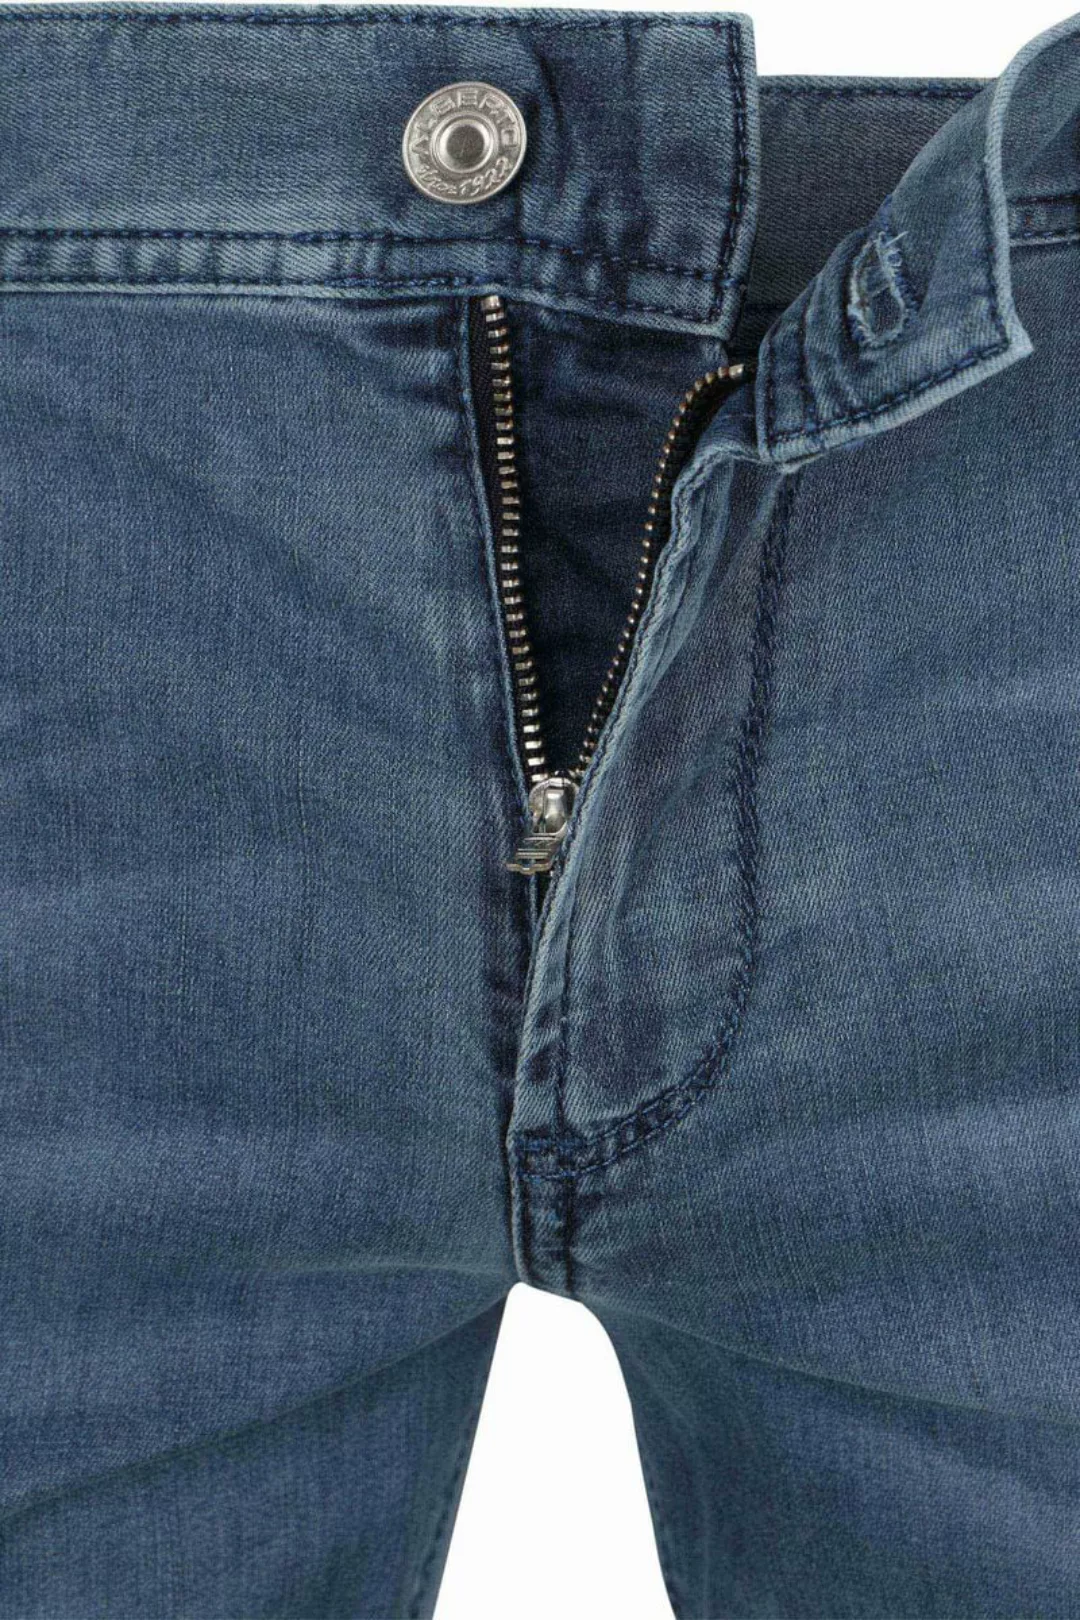 Alberto Pipe Jeans Blau - Größe W 36 - L 34 günstig online kaufen